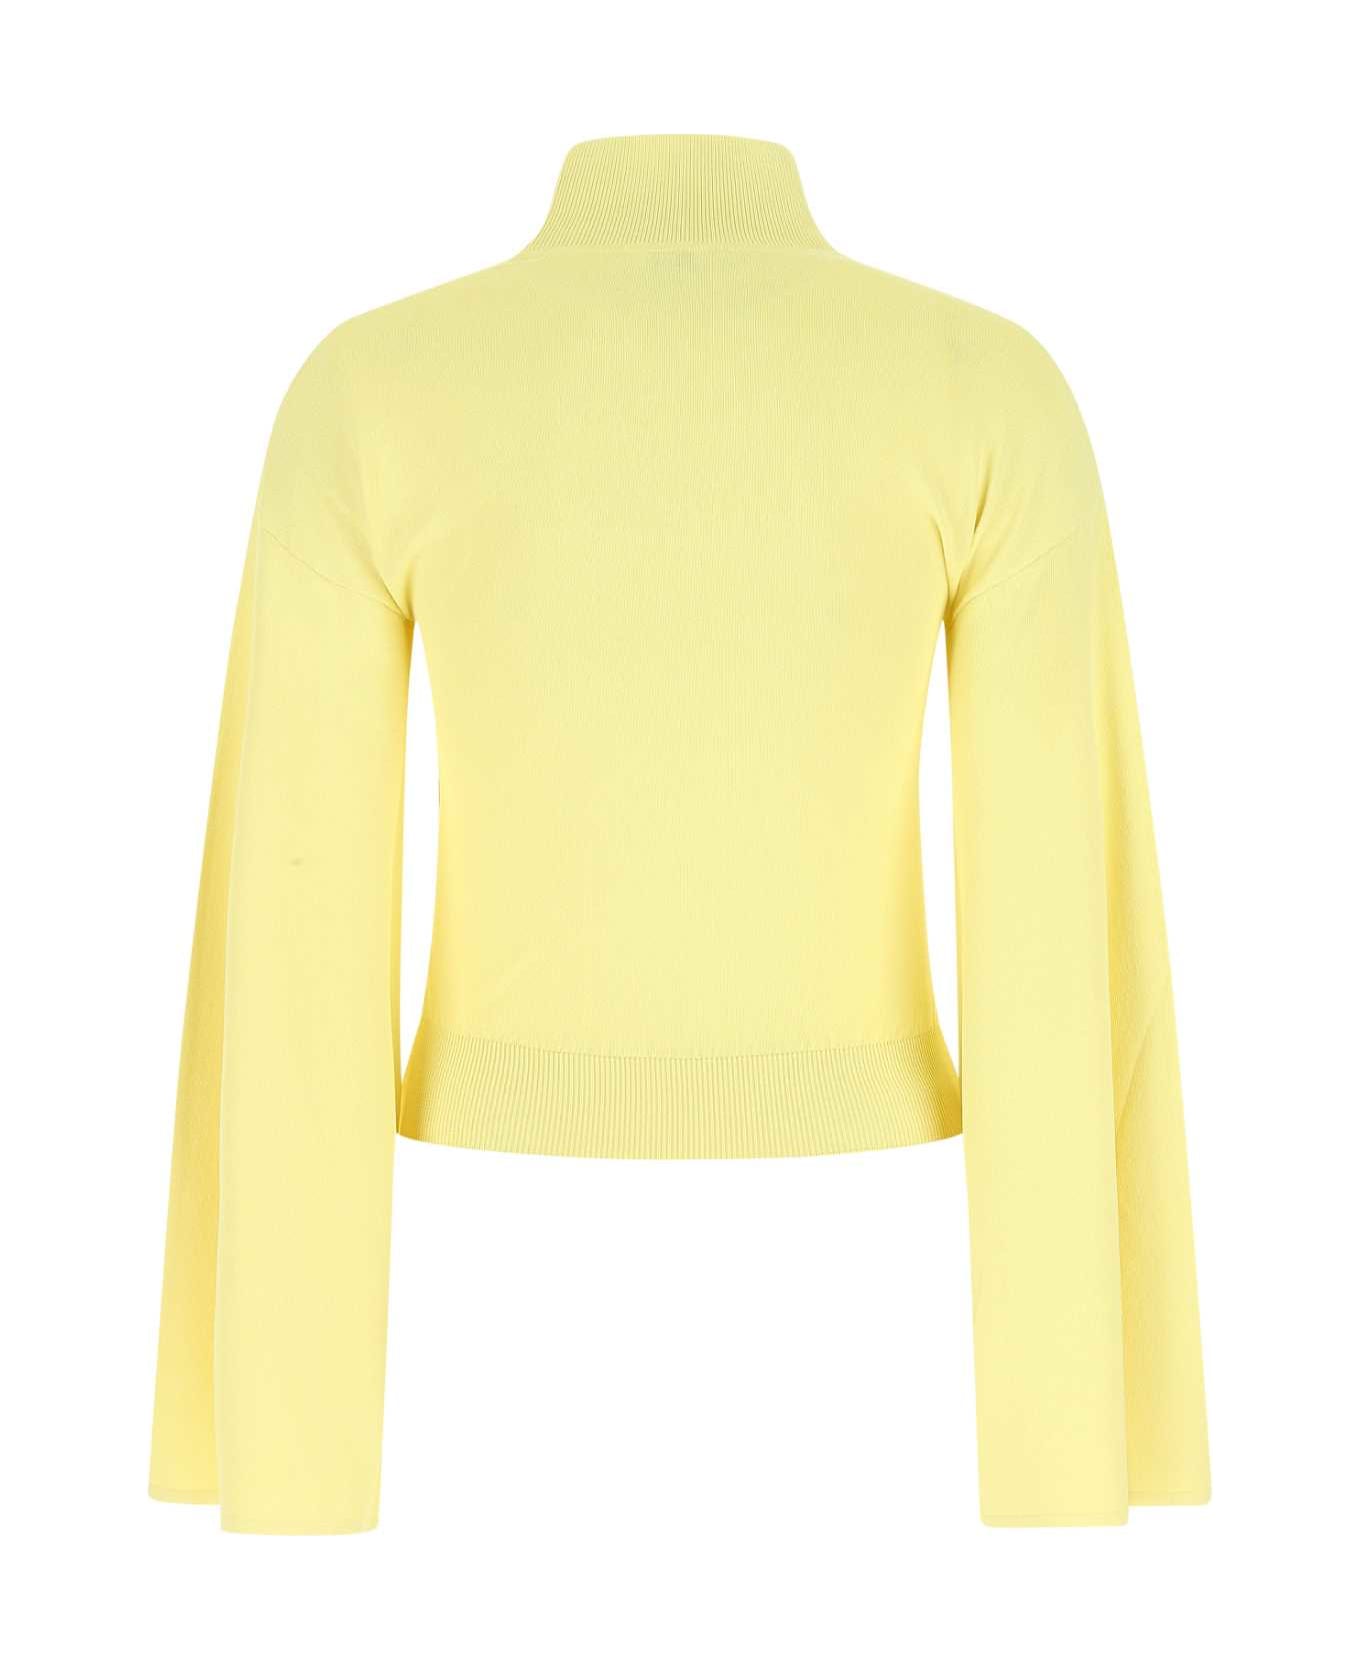 Loewe Pastel Yellow Stretch Viscose Blend Sweater - YELLOW